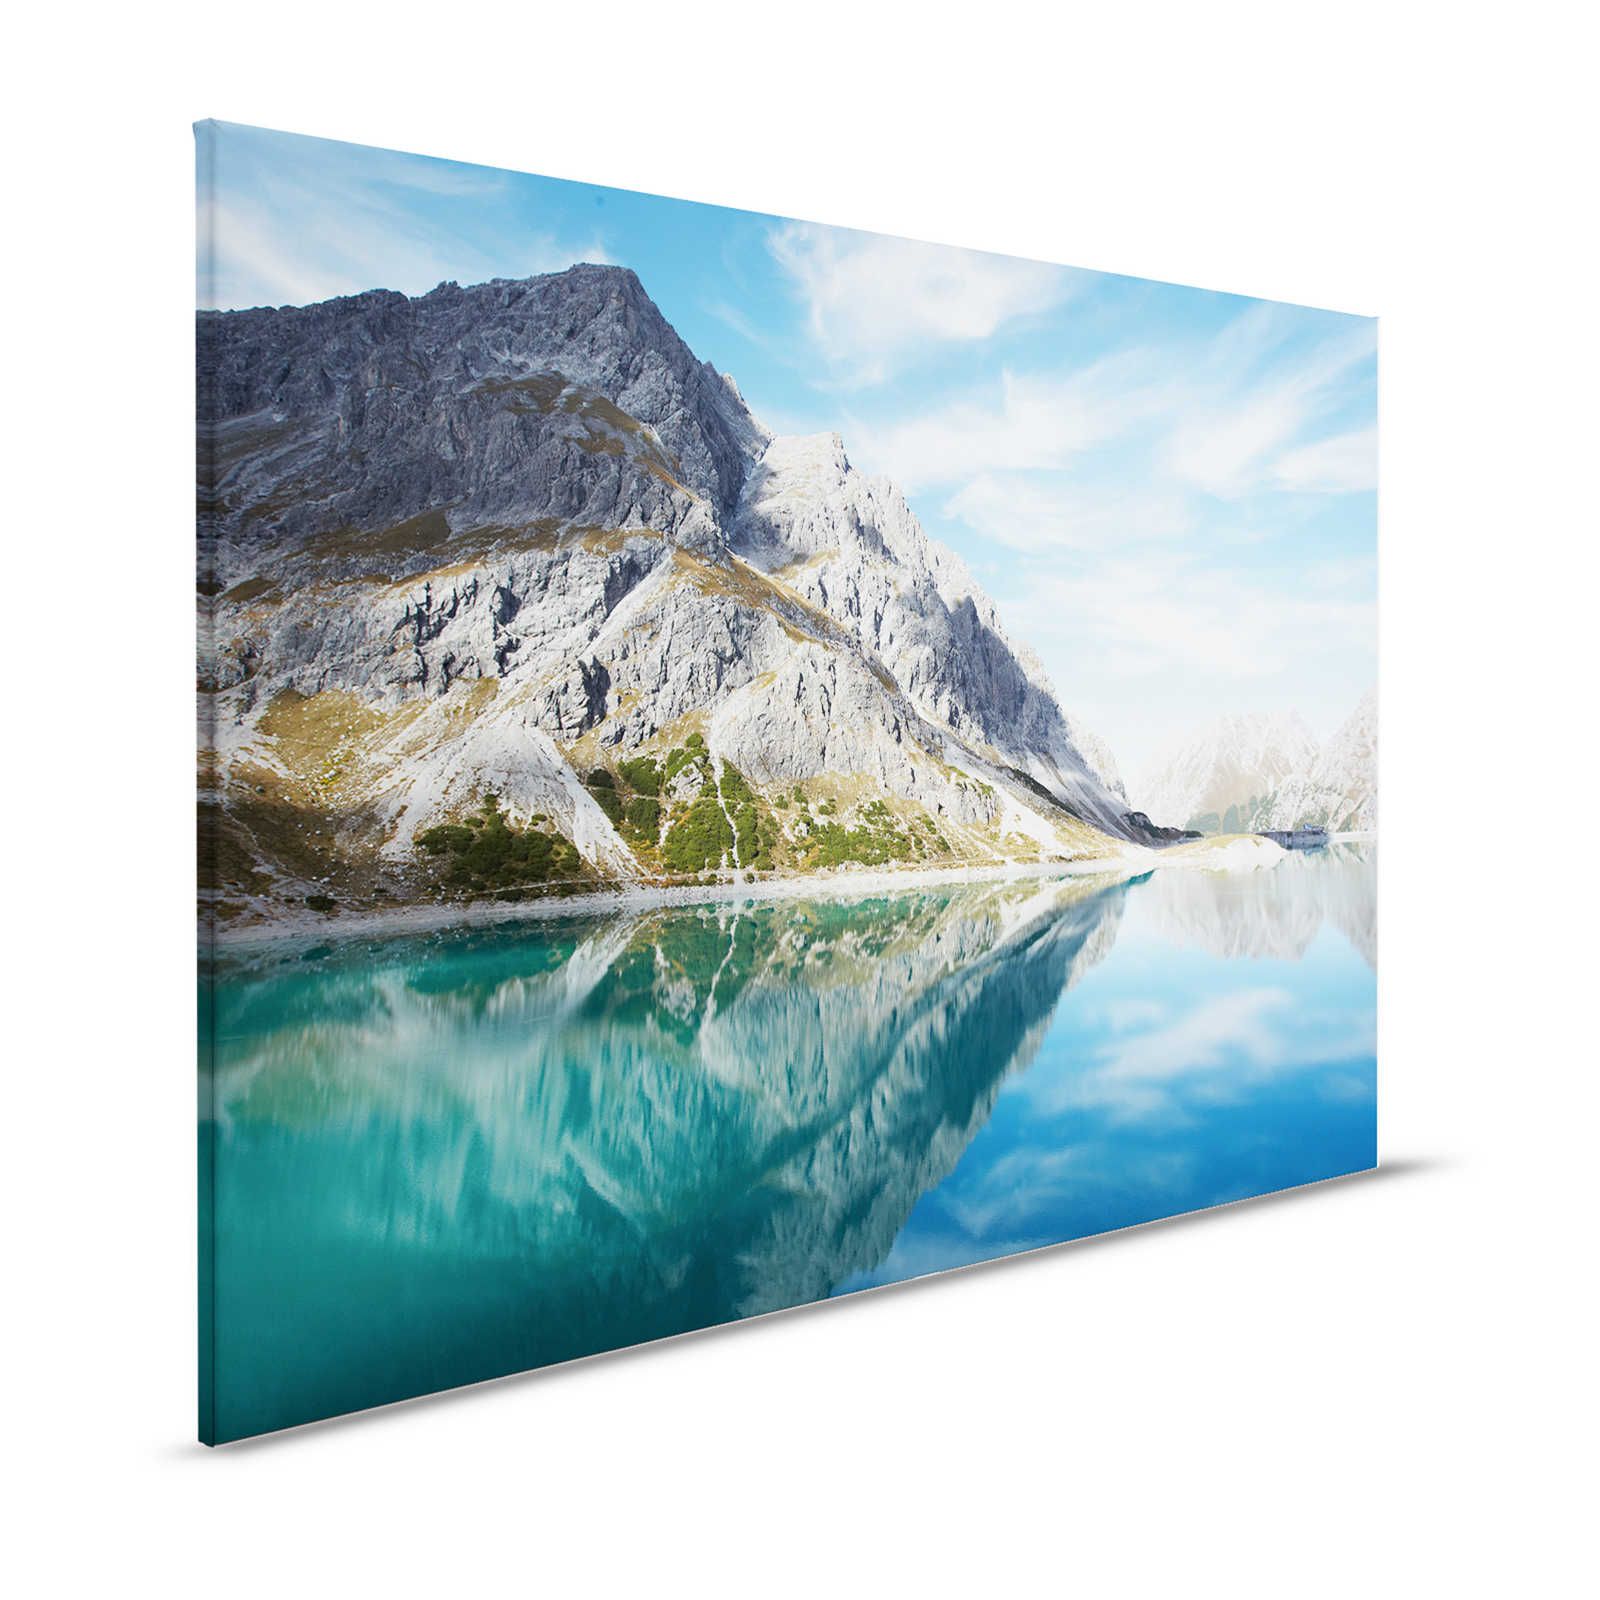 Lac de montagne clair - toile avec panorama naturel de montagne - 1,20 m x 0,80 m
